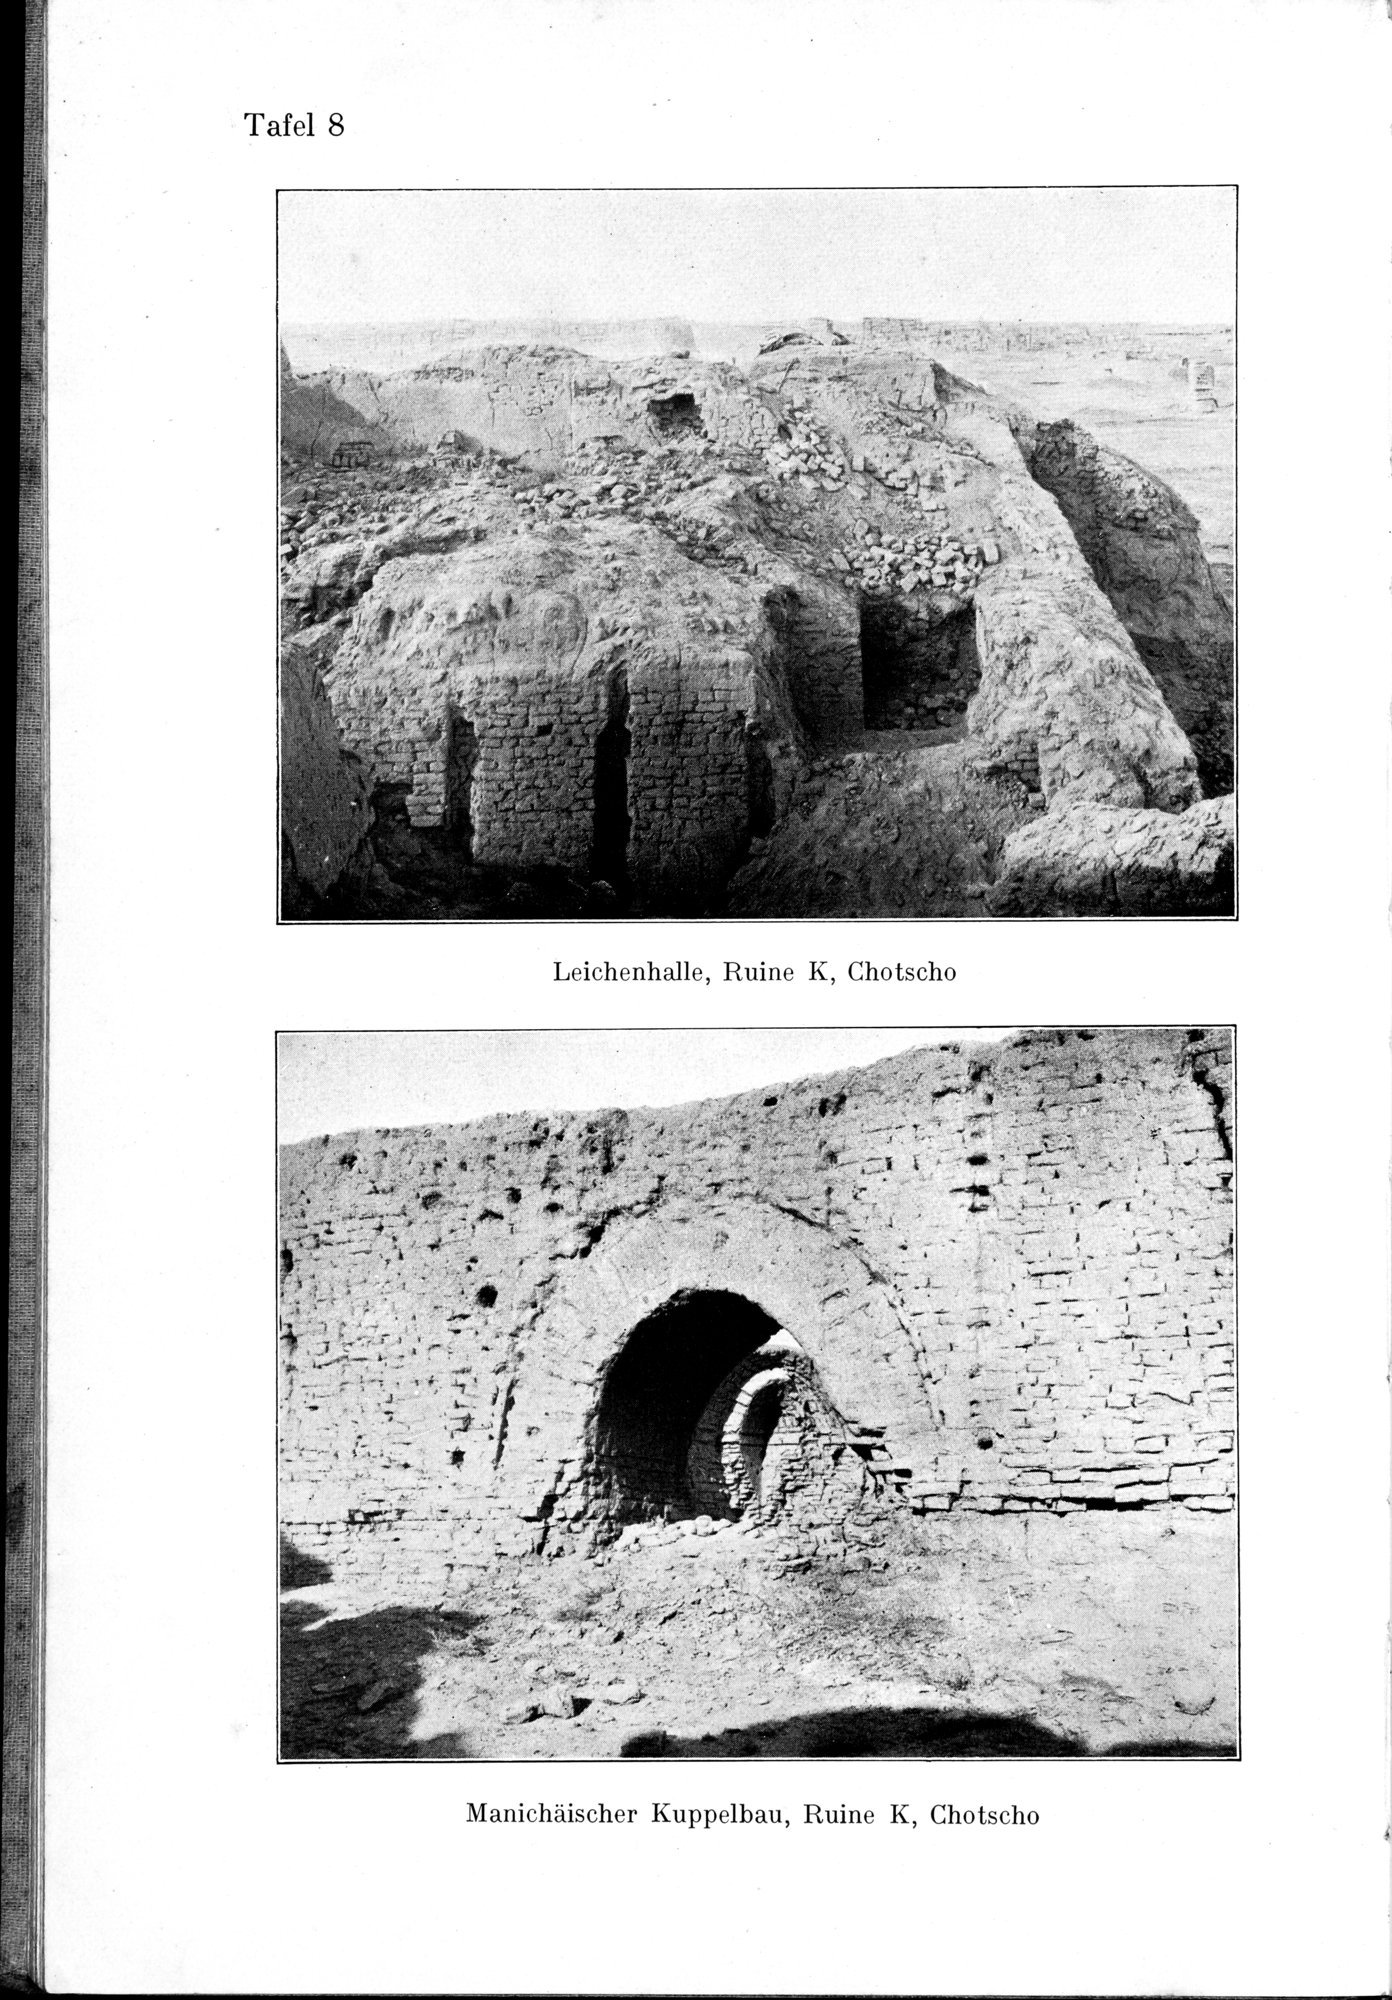 Auf Hellas Spuren in Ostturkistan : vol.1 / Page 64 (Grayscale High Resolution Image)